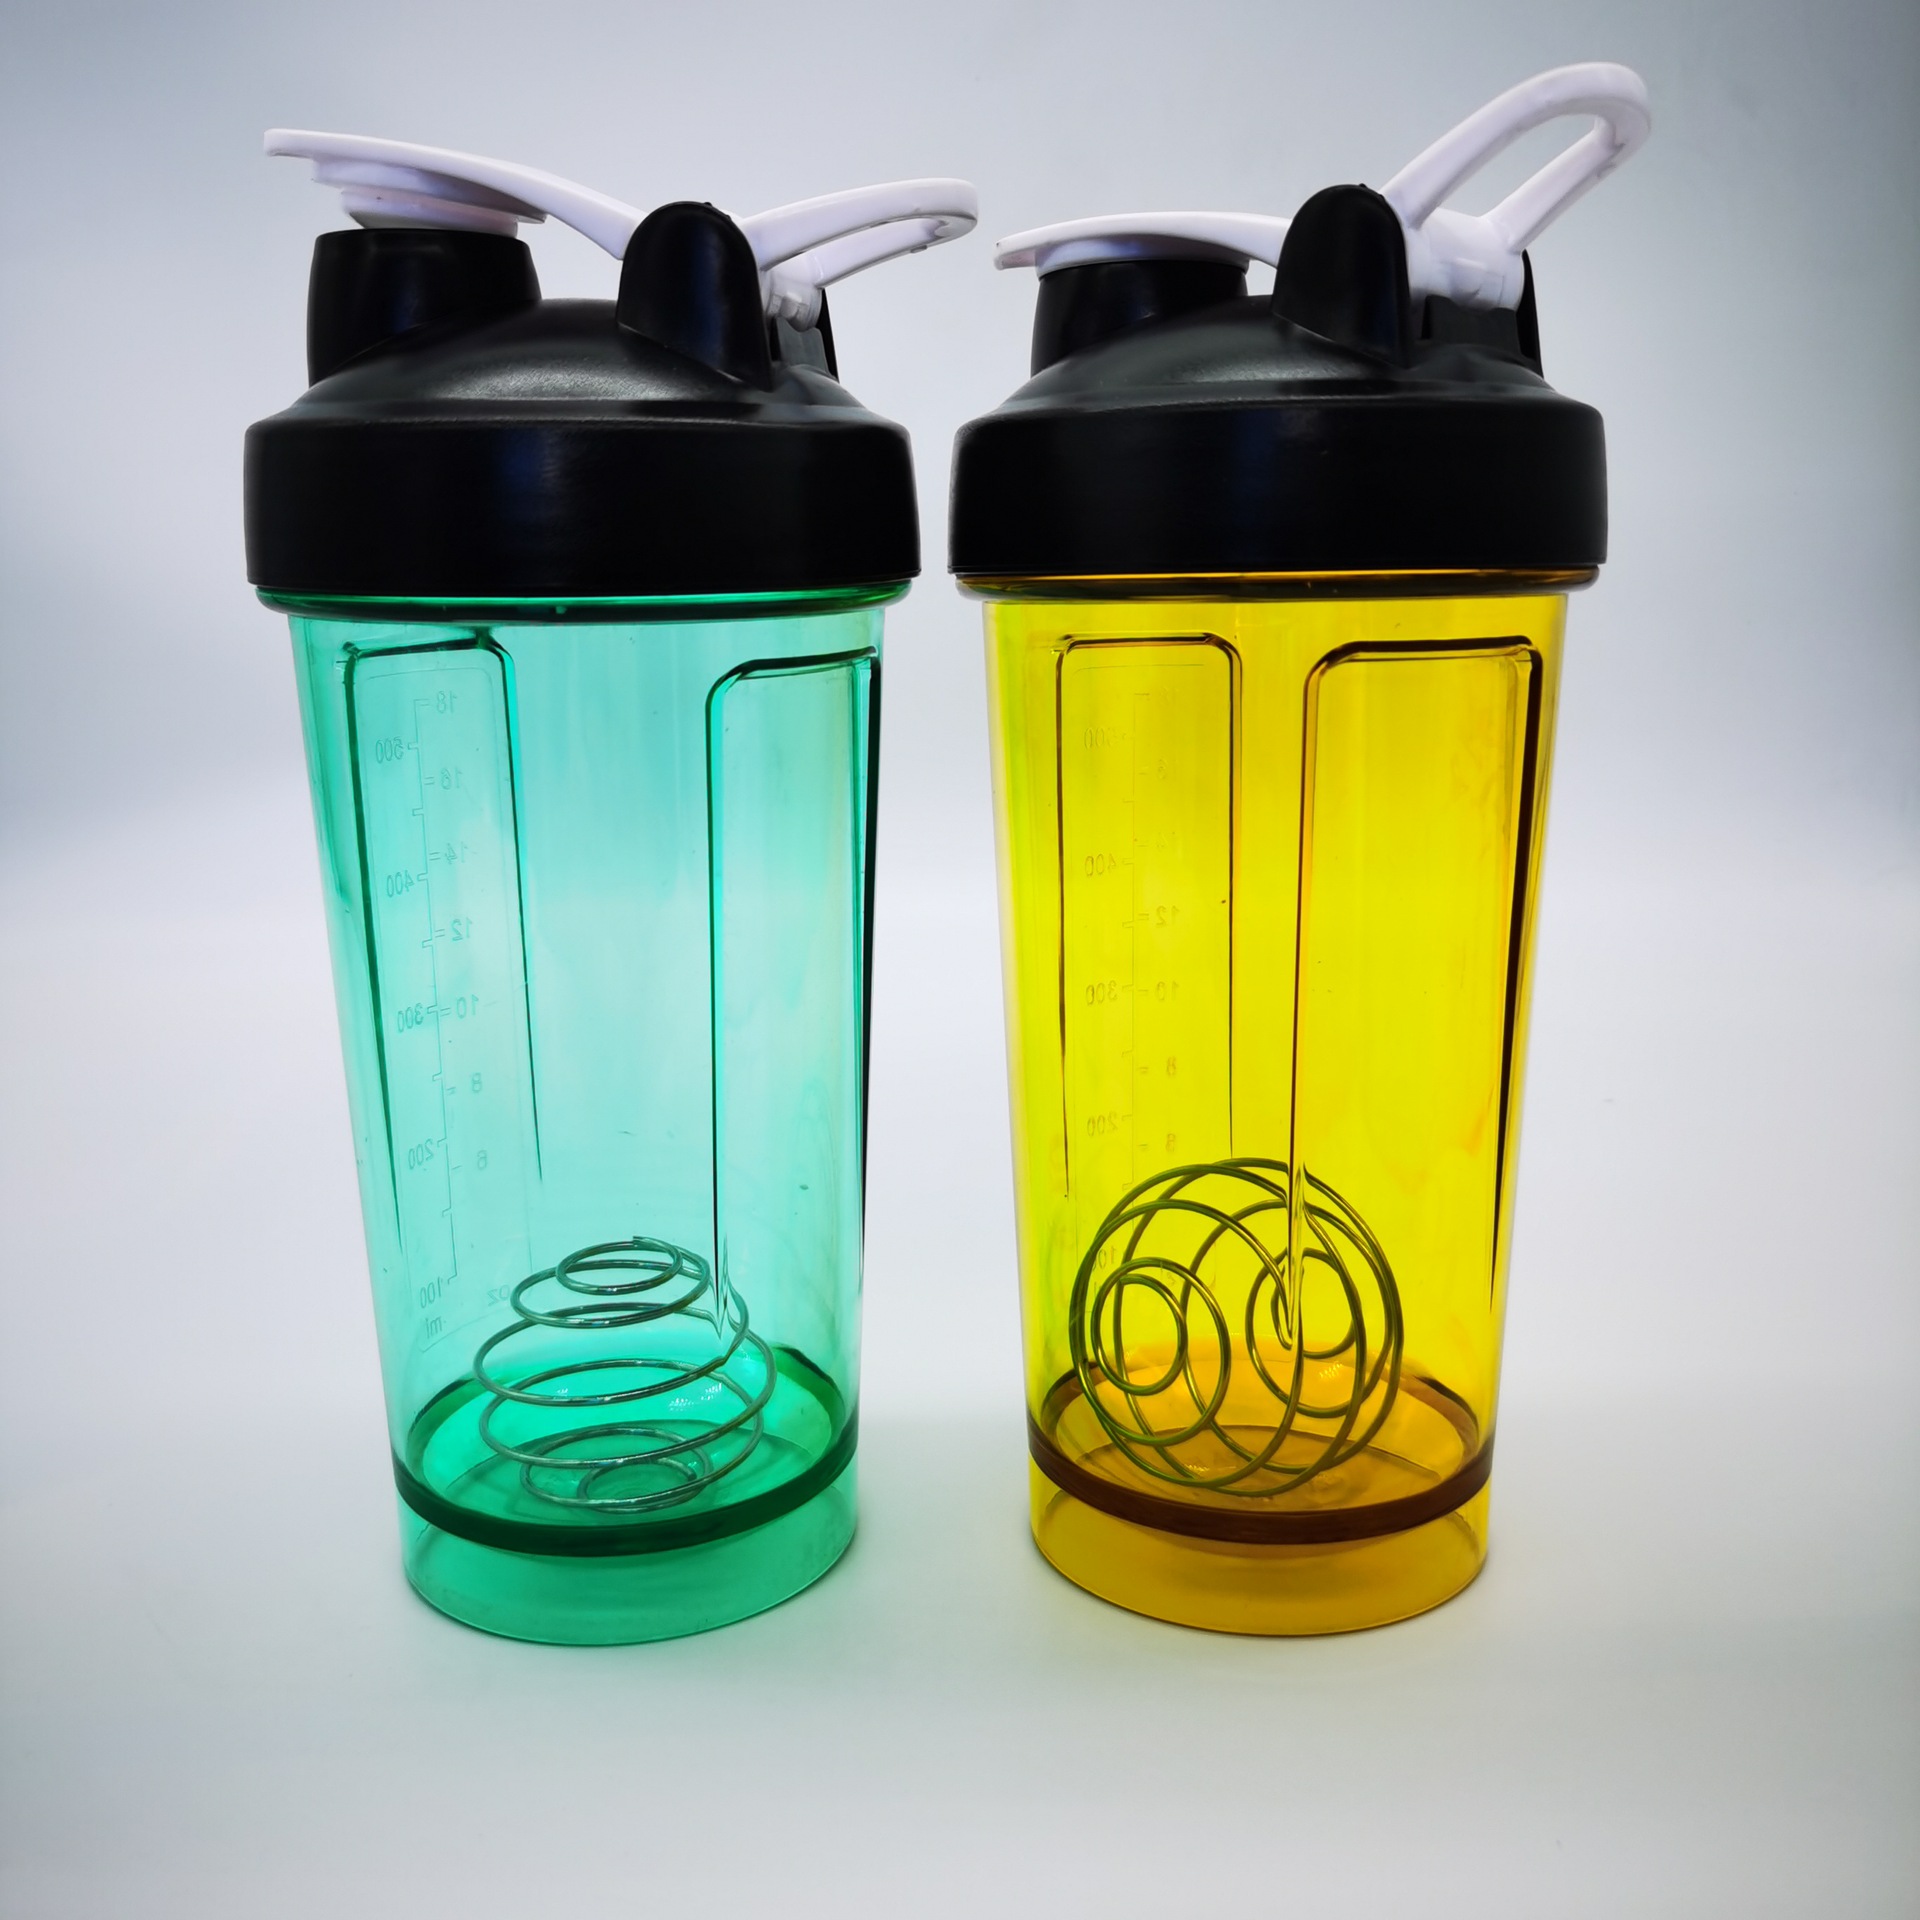 16 oz. Plastic Shaker Bottles - Buy plastic bottle, shaker bottle ...